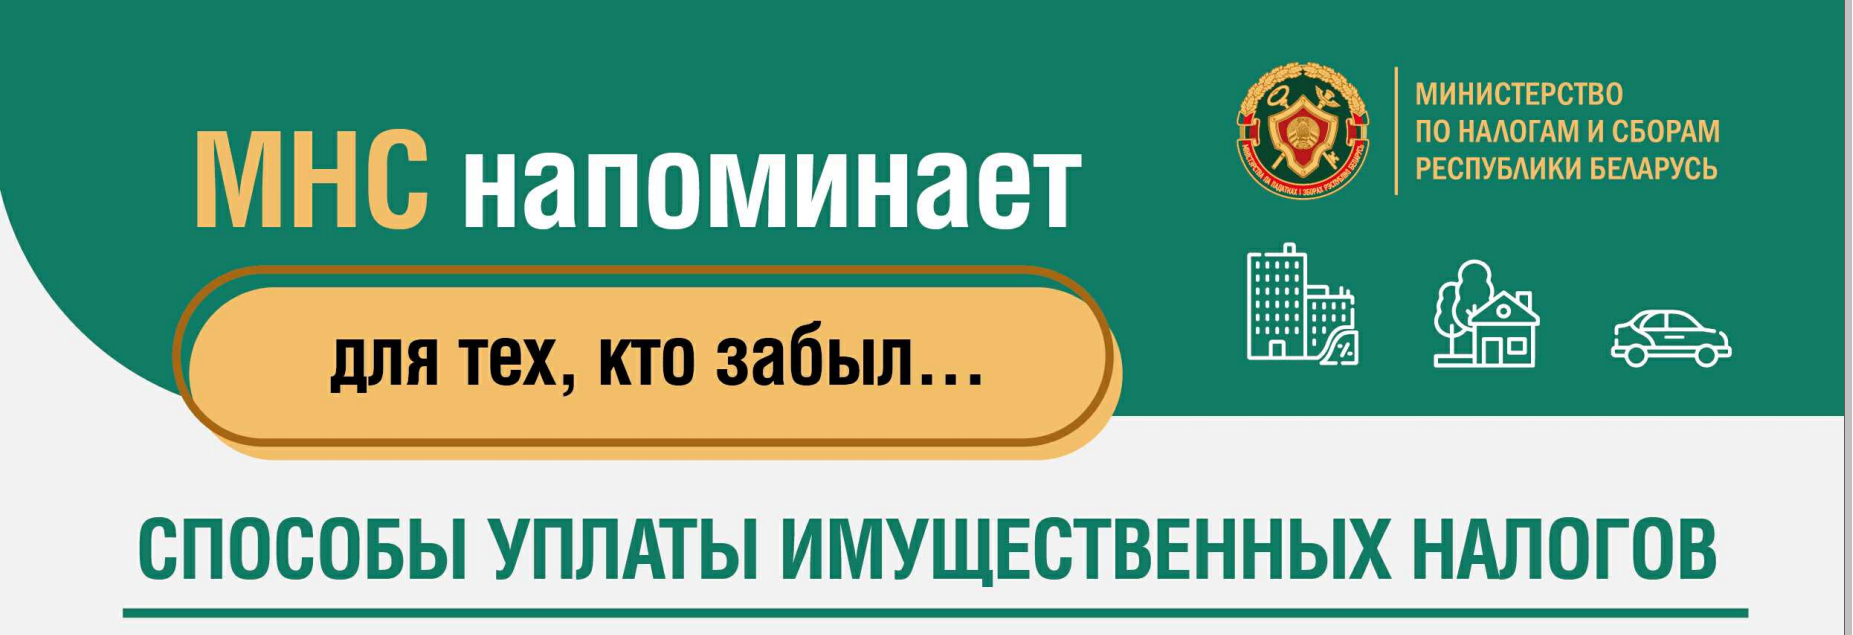 Сайт министерства налогов и сборов республики беларусь. МНС Беларуси личный кабинет.